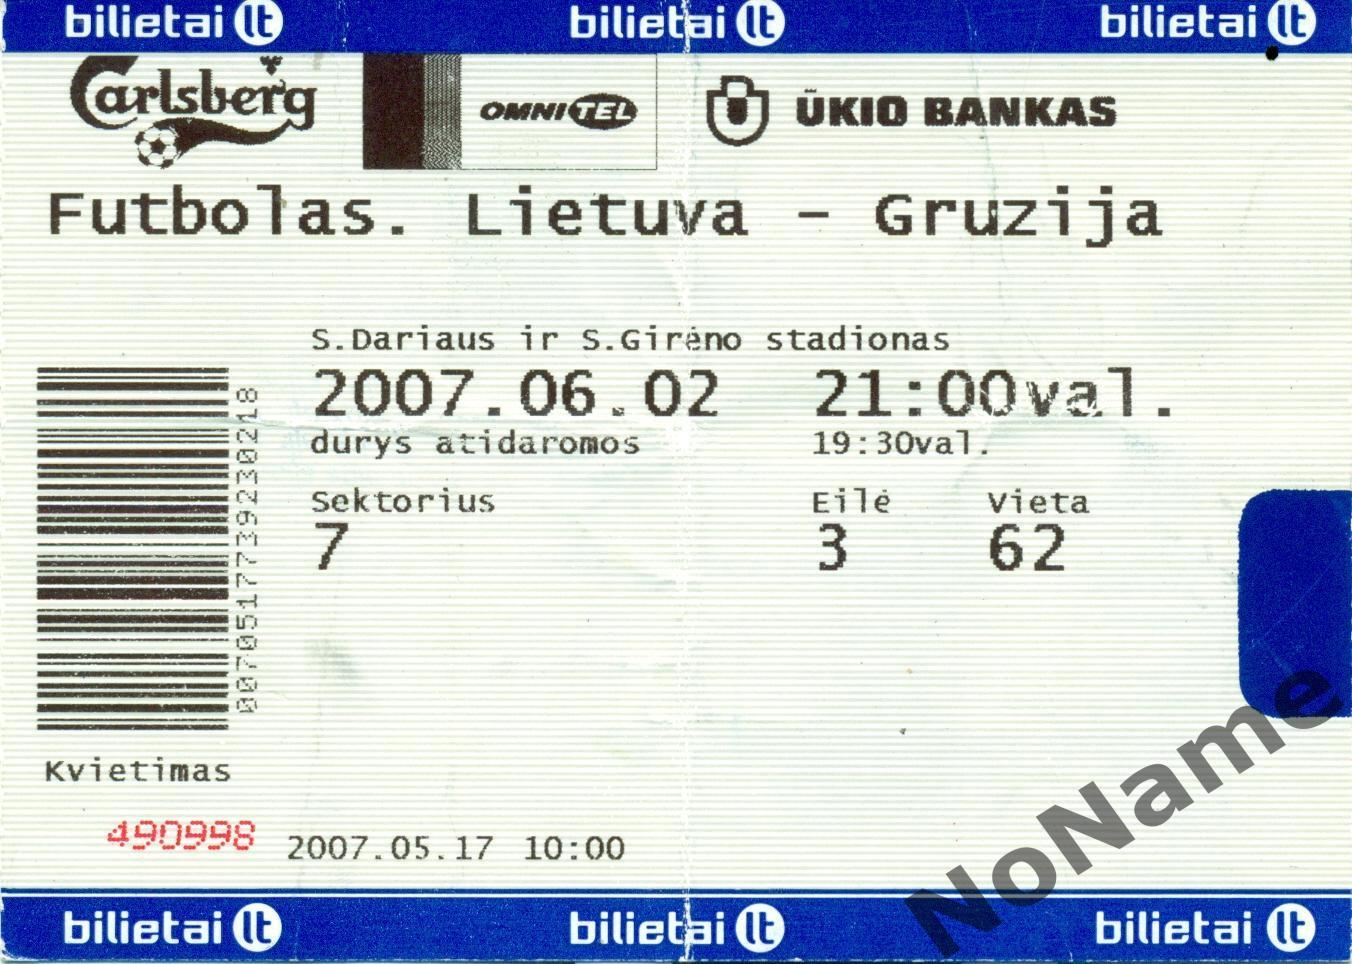 Билет. Литва - Грузия - 2007 г.